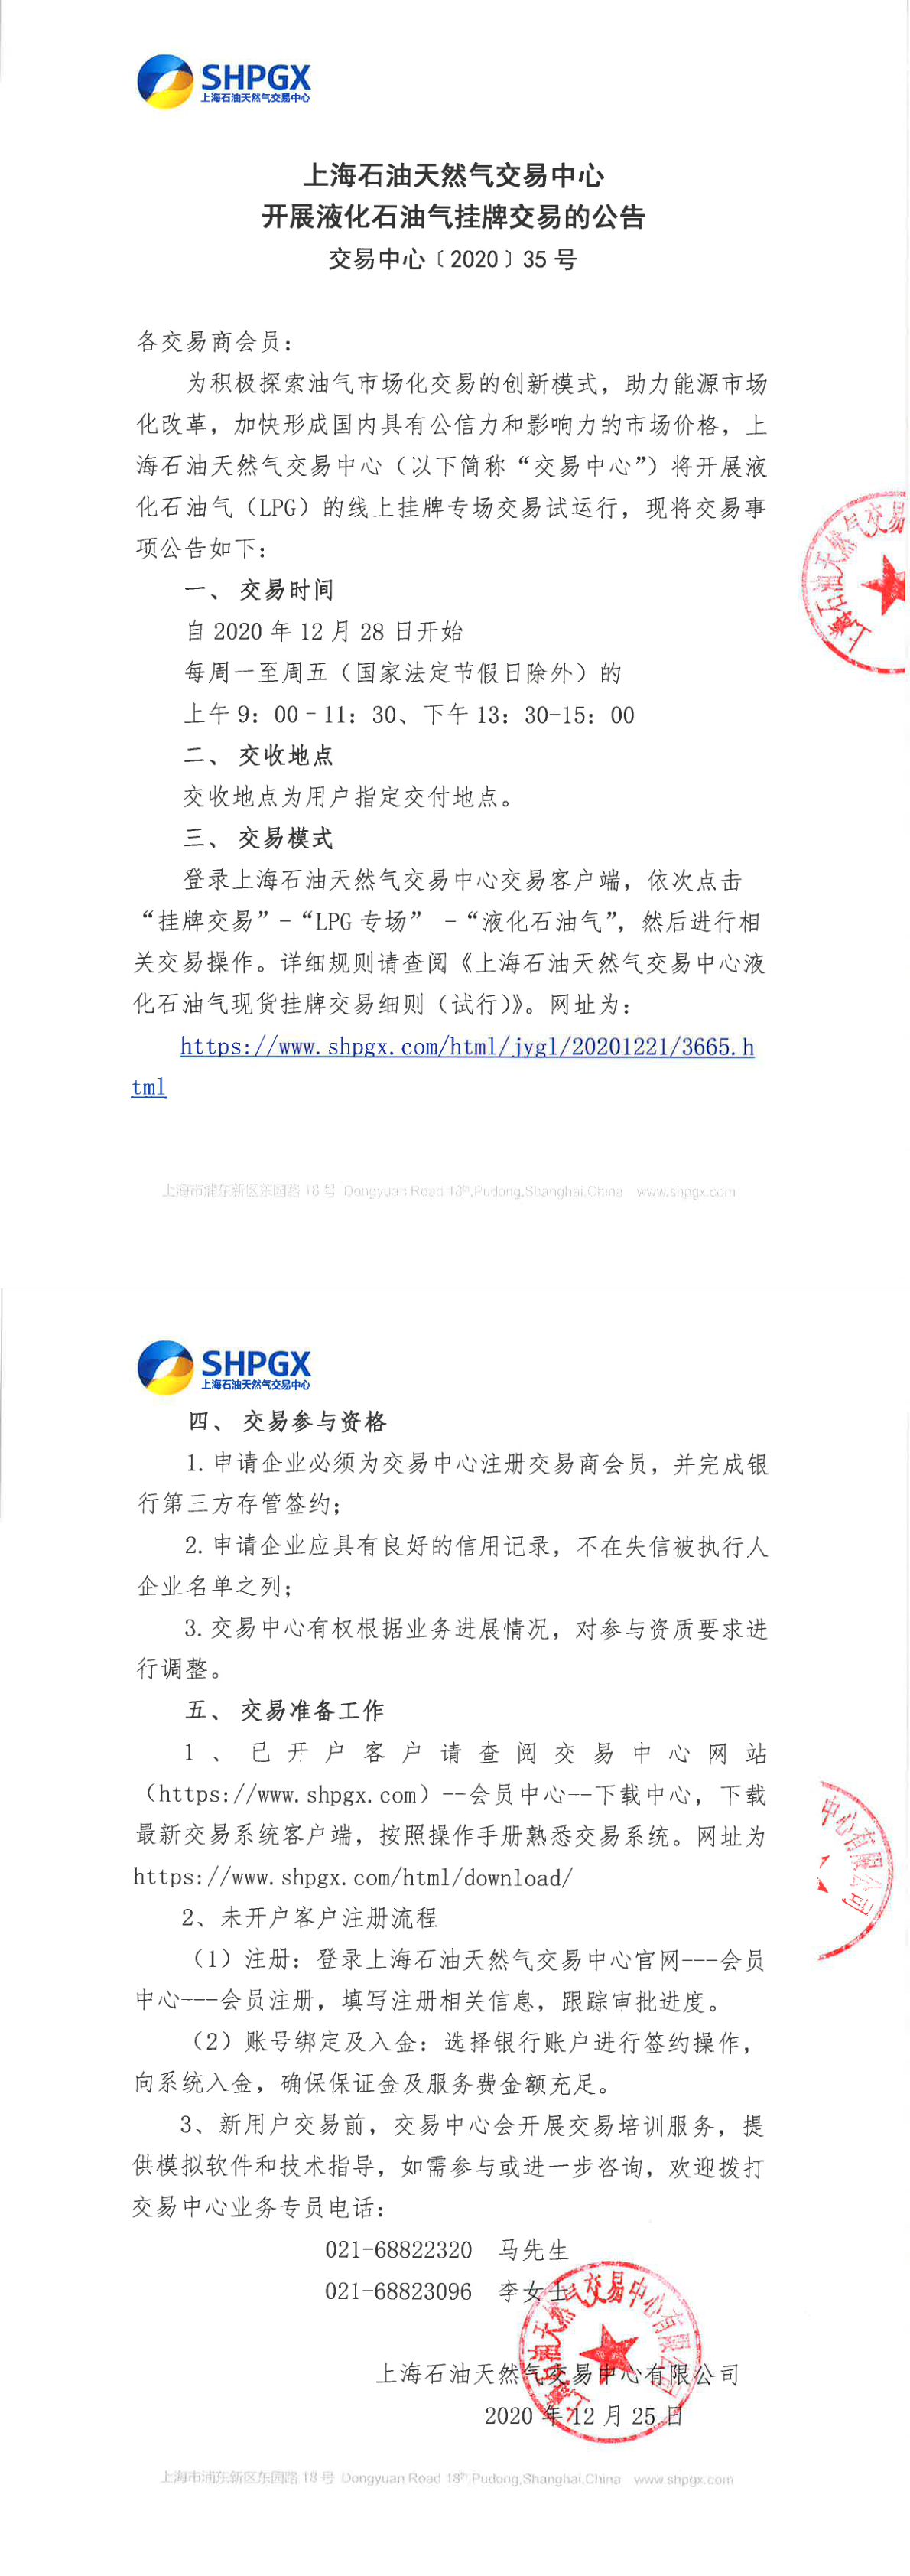 1225【上线公告】上海石油天然气交易中心液化石油气上线公告.png